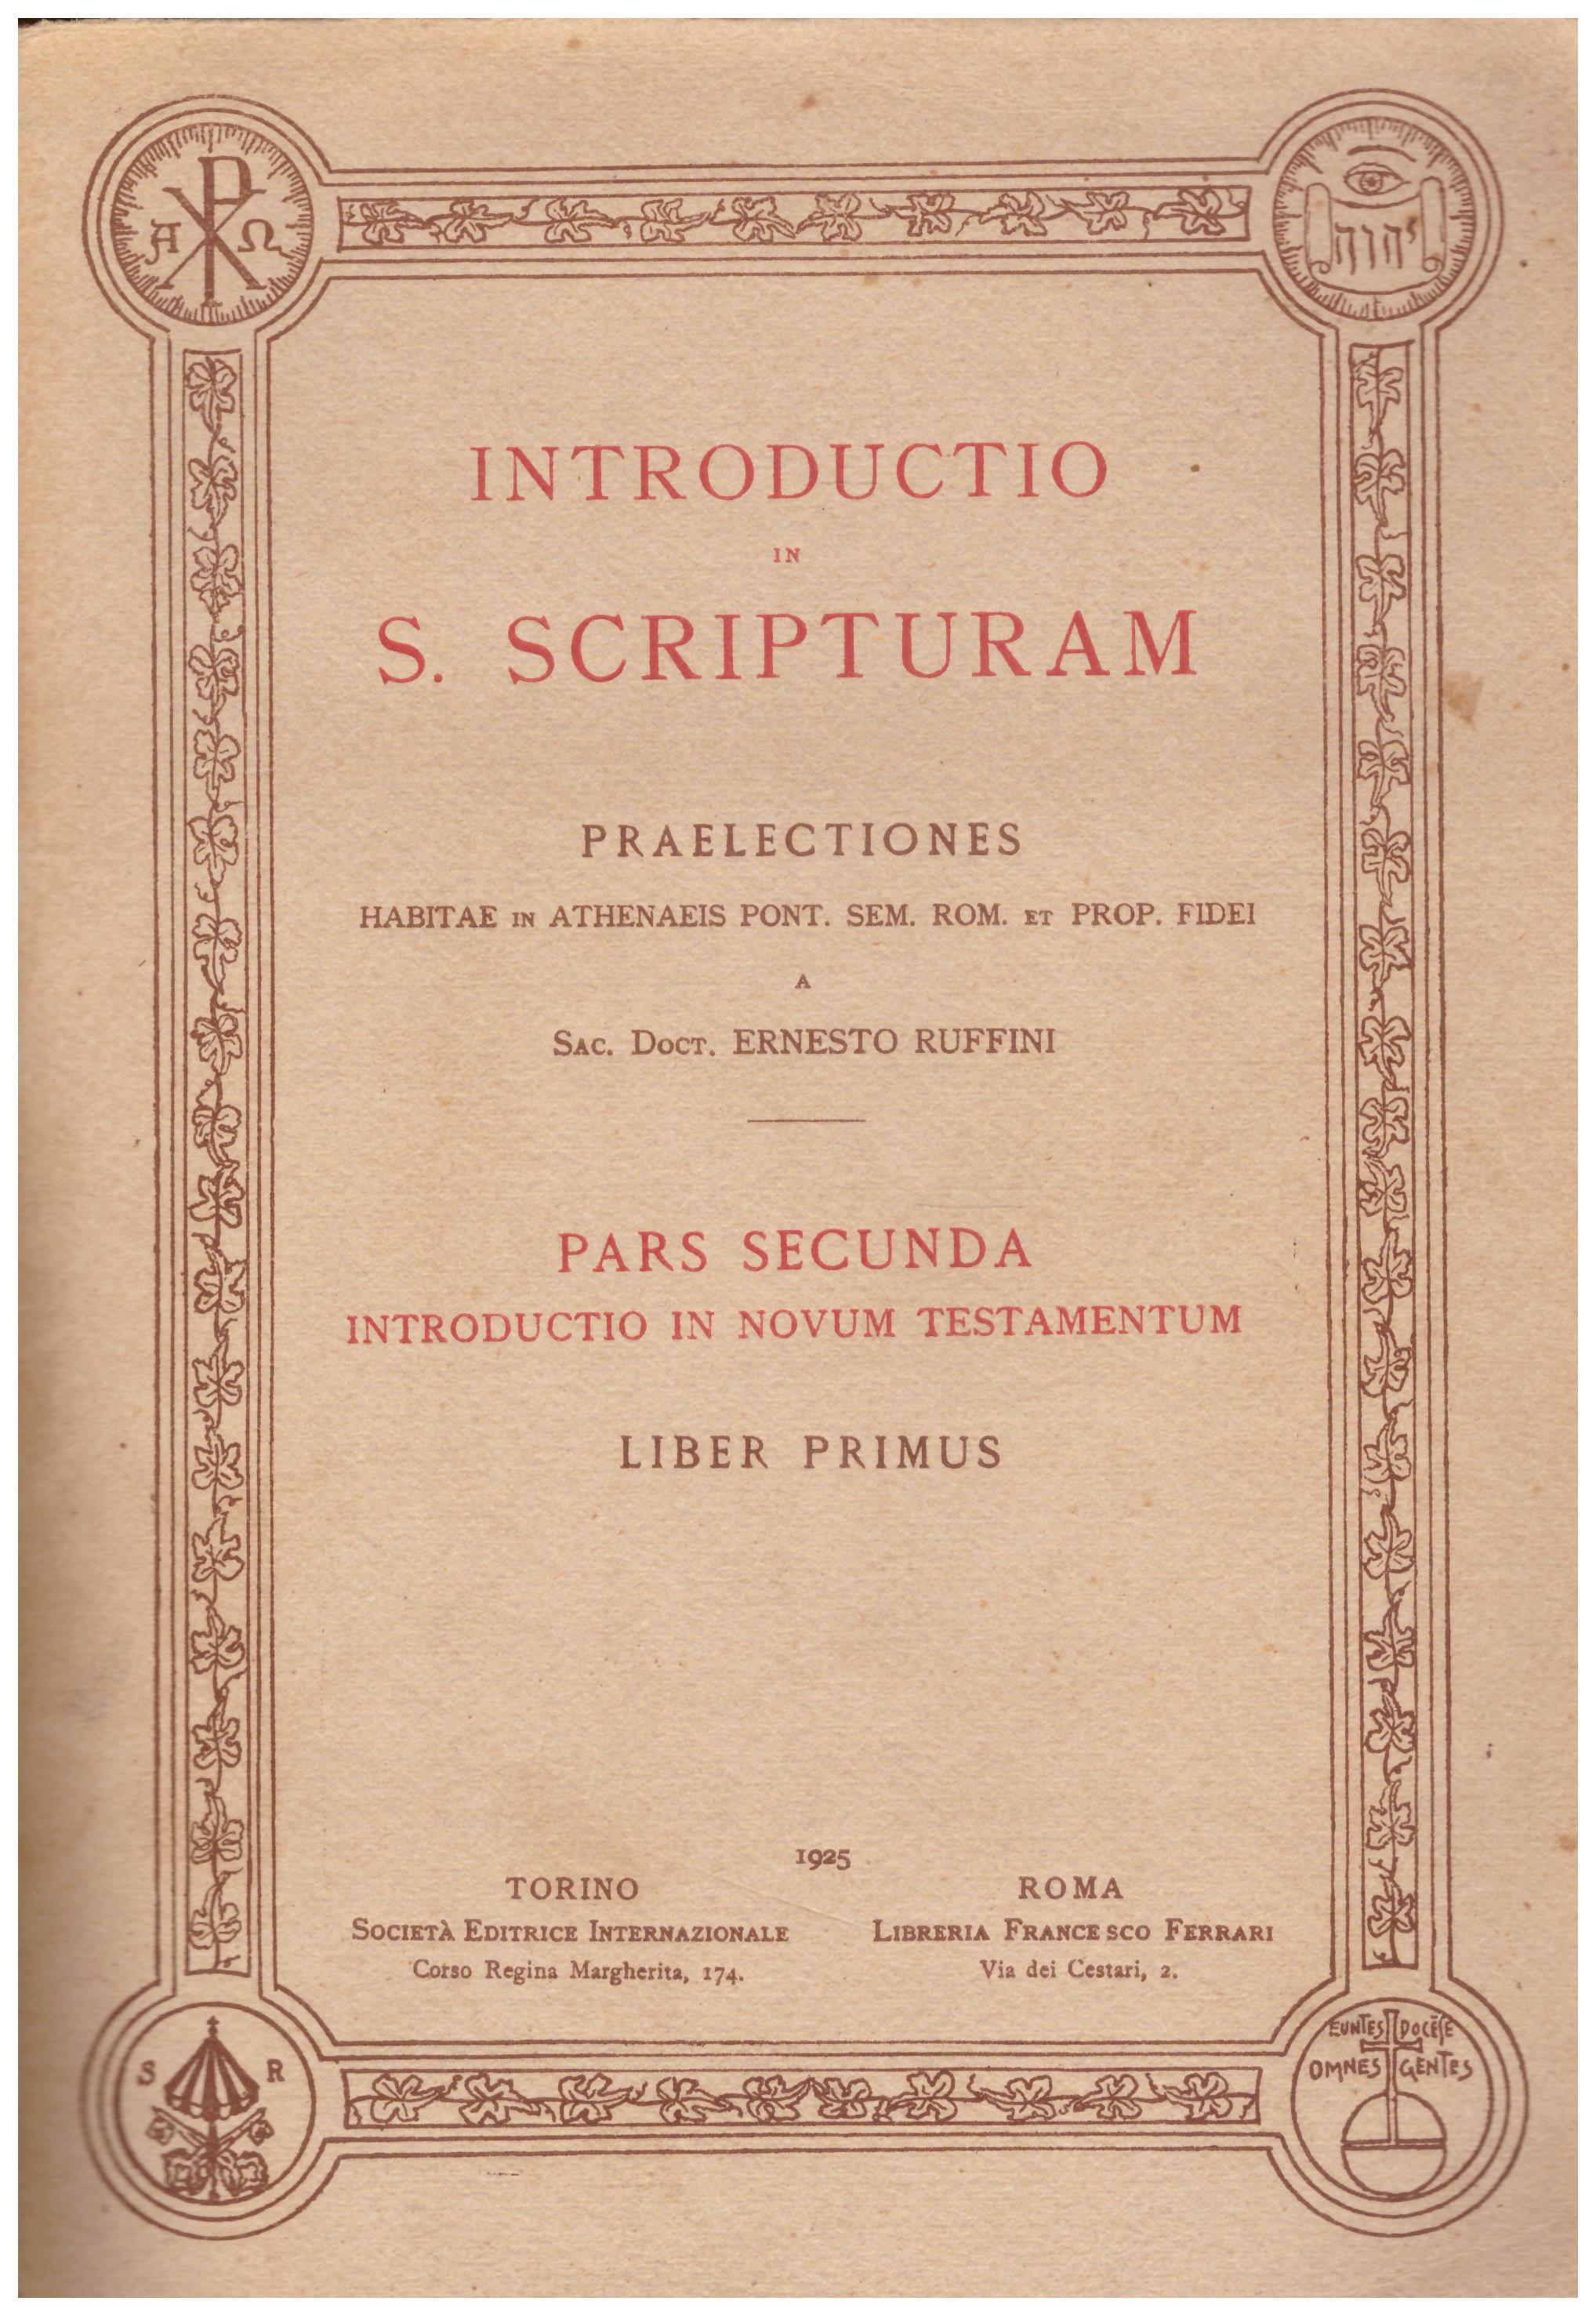 Titolo: Introductio in S. scriptorum, PARS SECUNDA LIBER PRIMUS Autore: Ernesto Ruffini Editore: Vincenzo Bona 1925